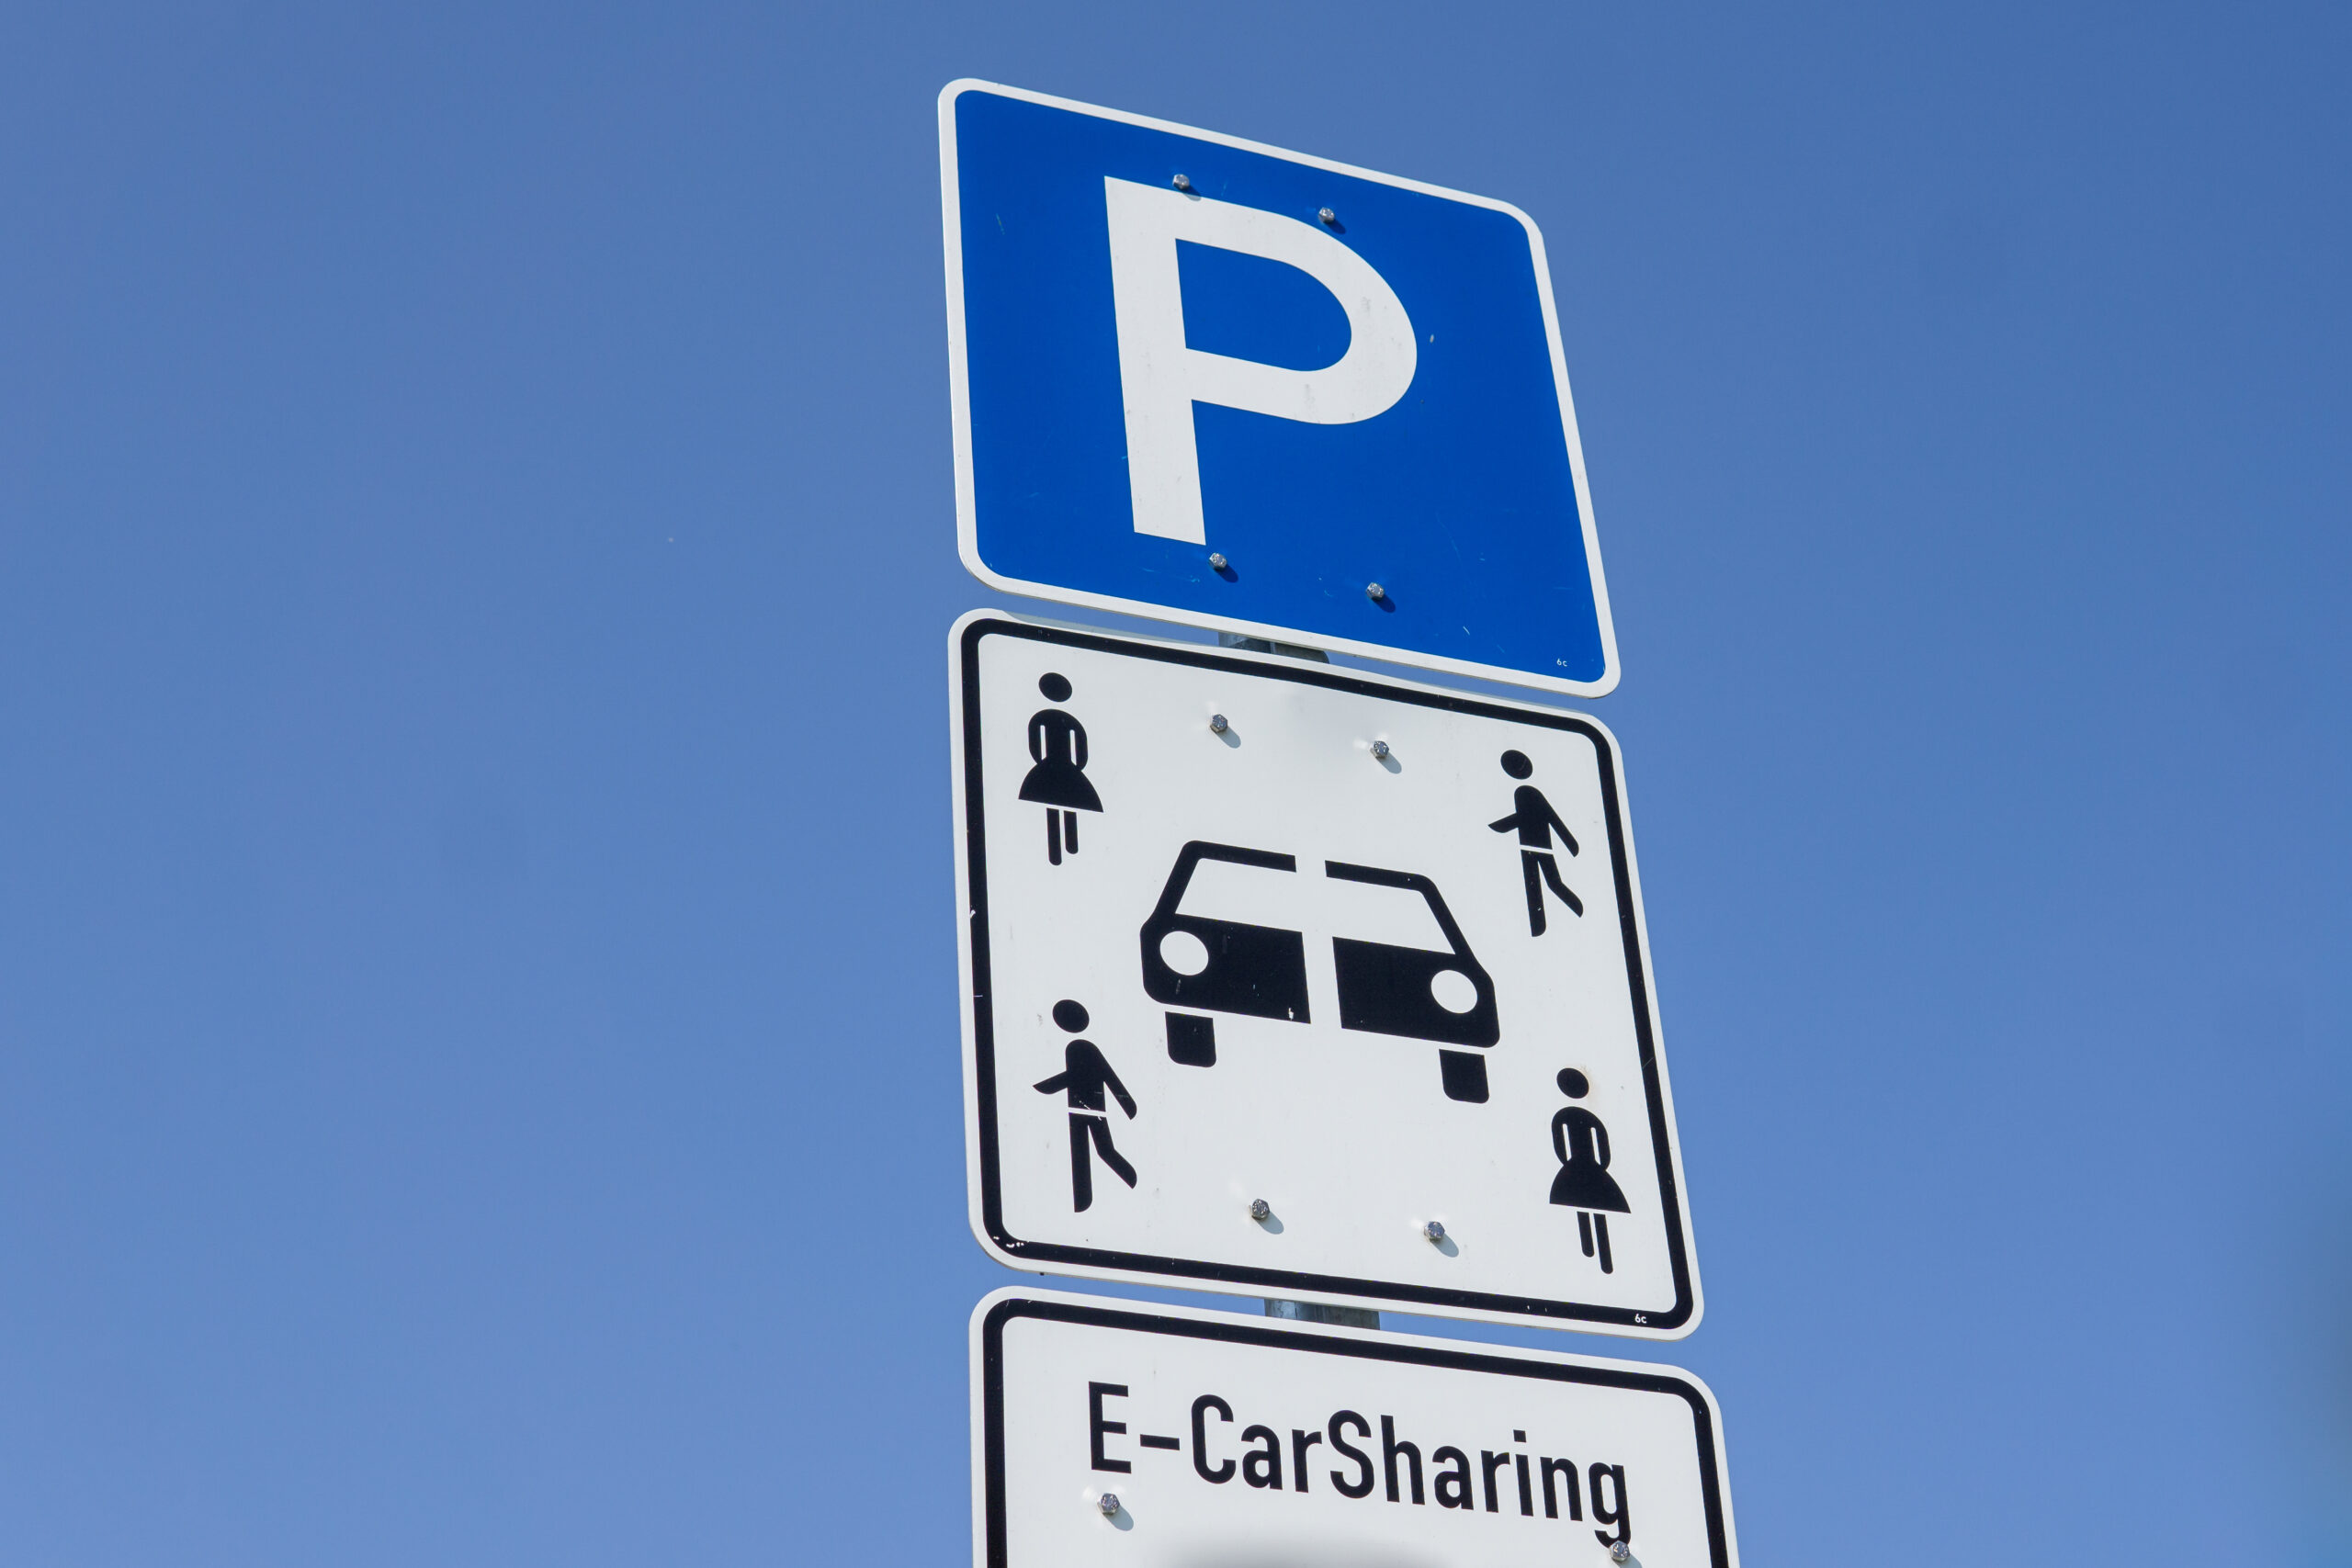 Welche Bedeutung hat das Carsharing-Schild? Und wie sieht es aus? - mikar